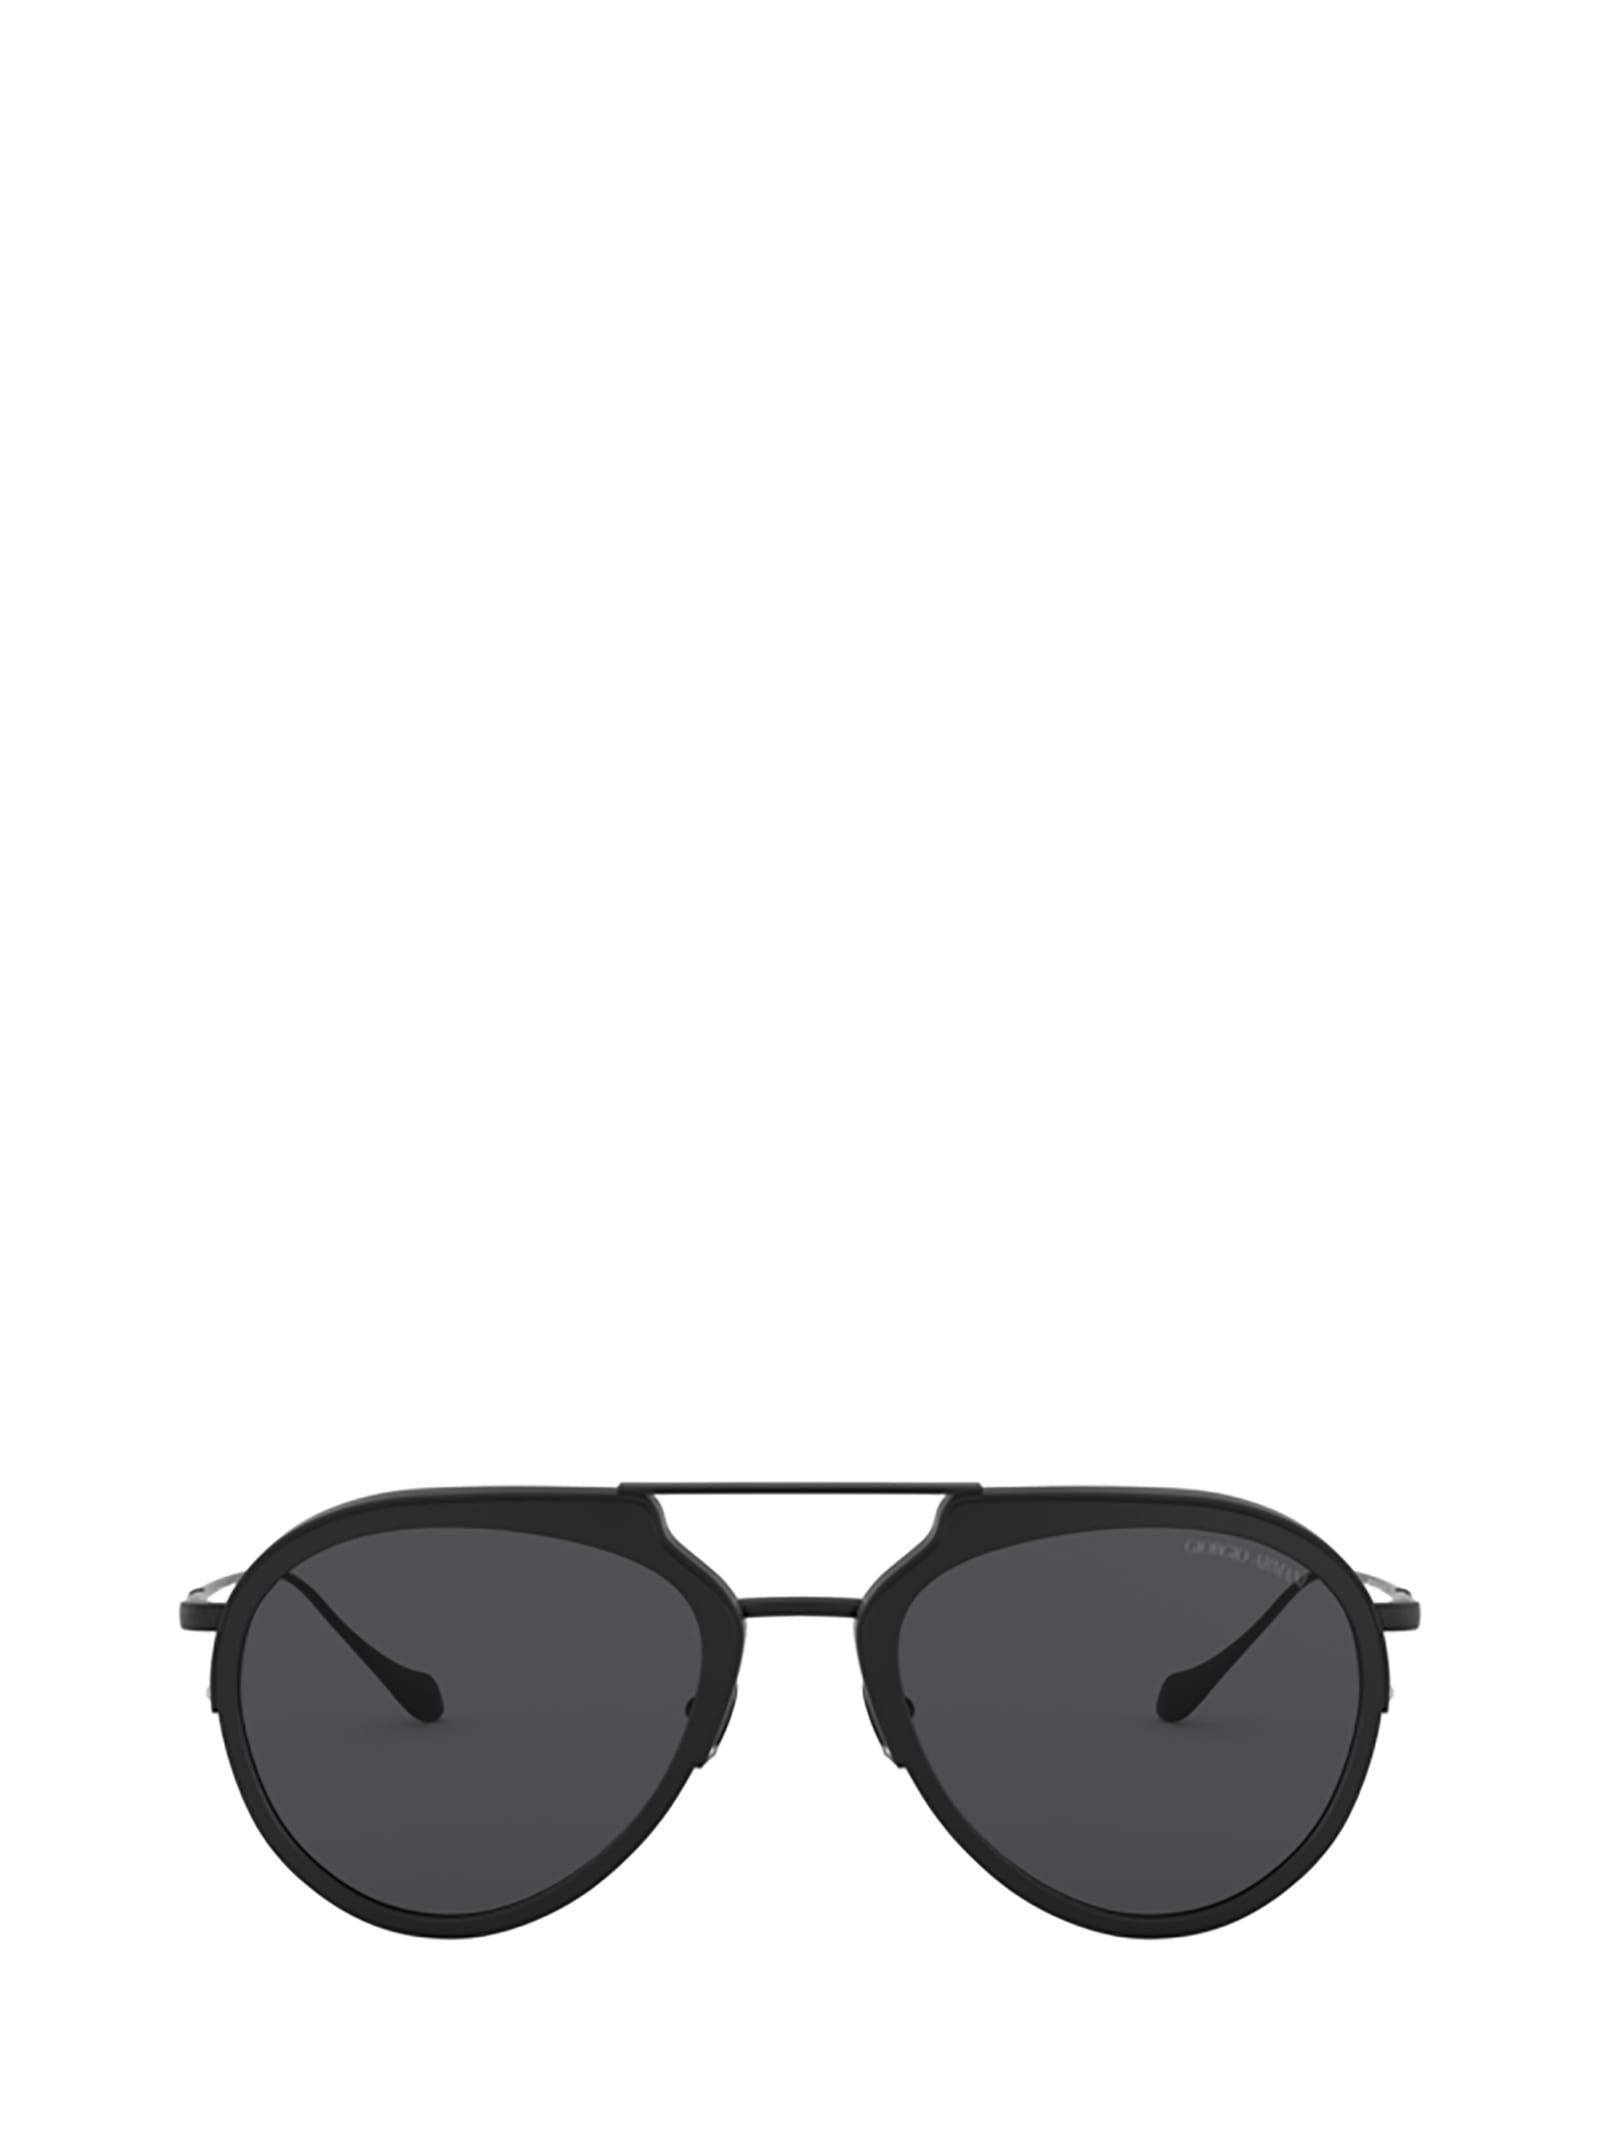 Giorgio Armani Giorgio Armani Ar6097 Matte Black Sunglasses